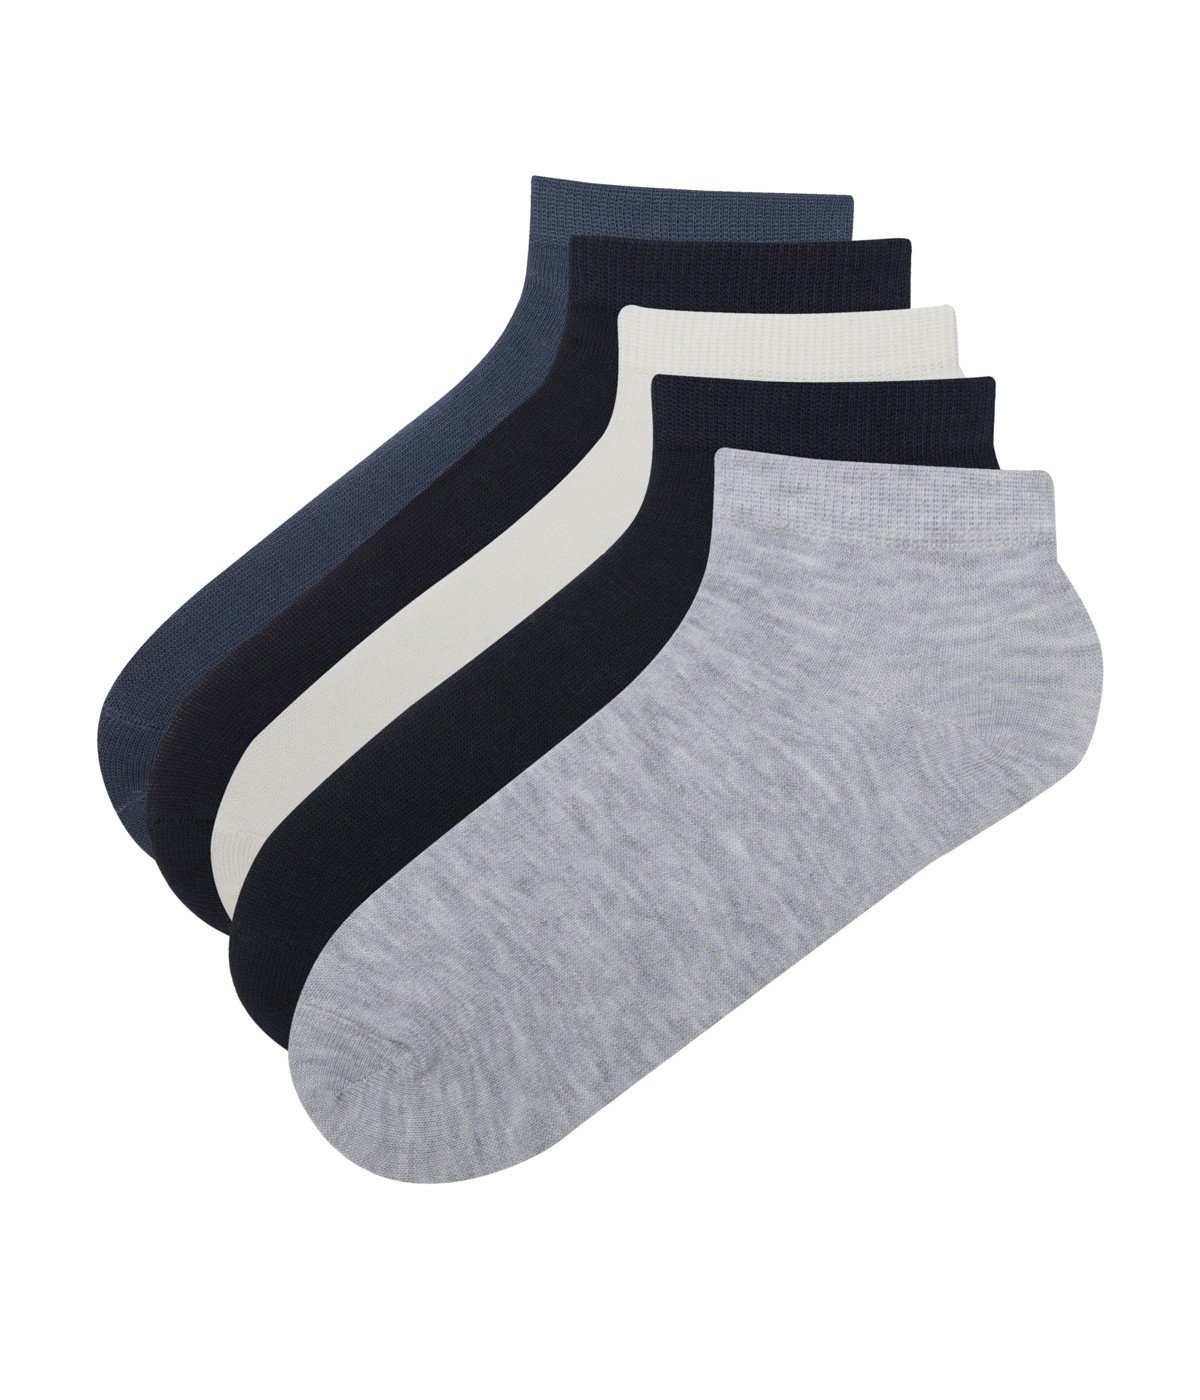 Basic 4 in 1 Liner Socks